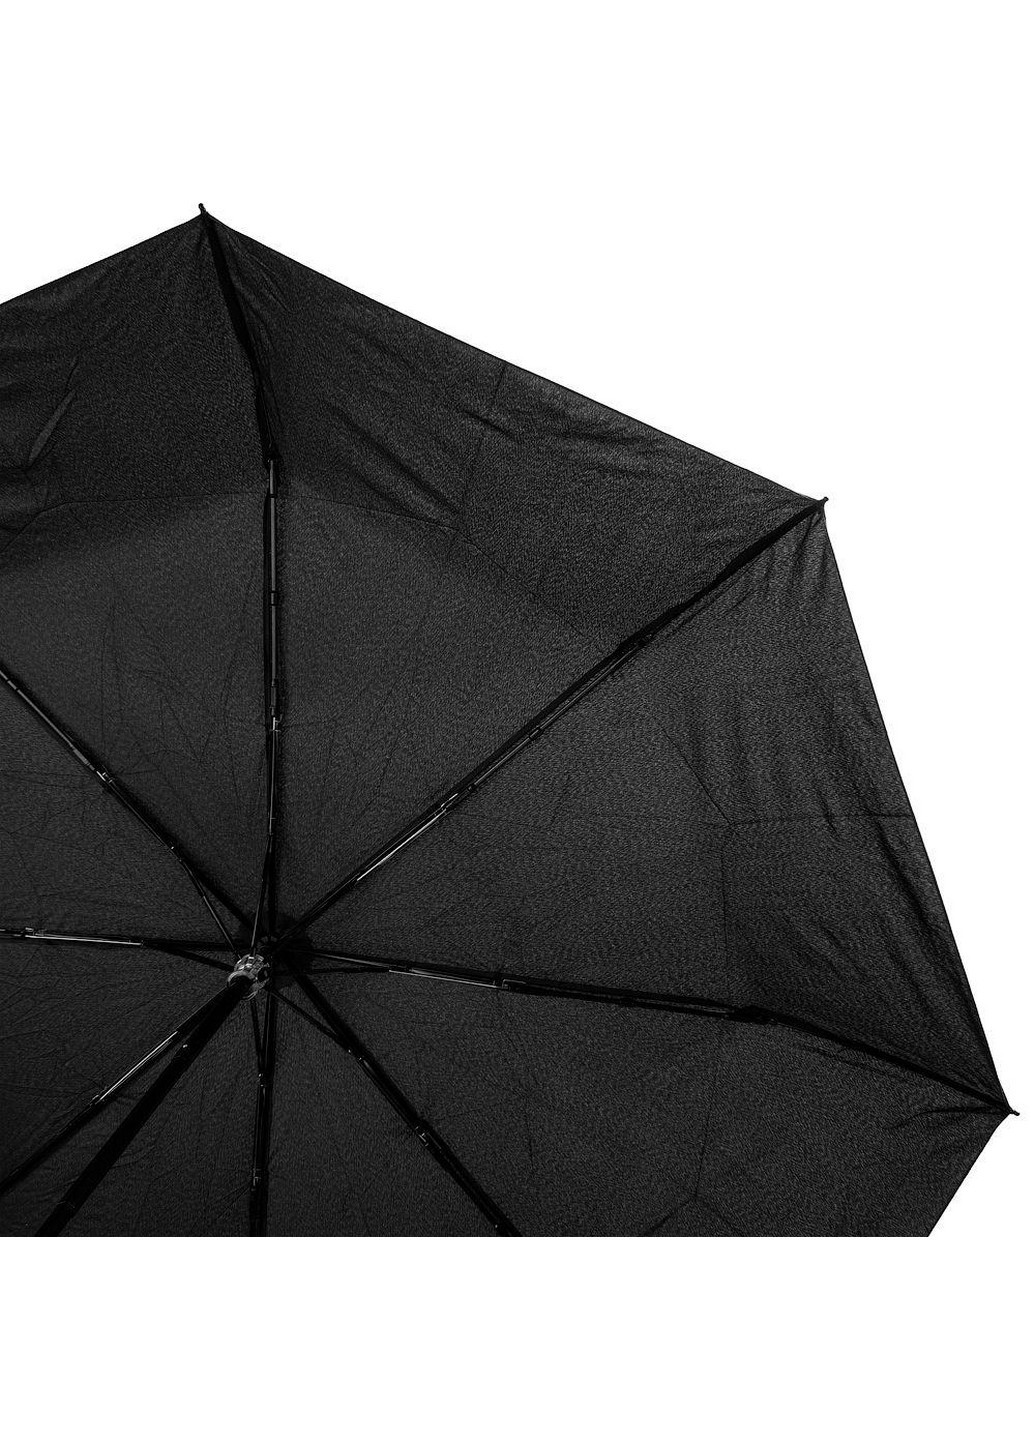 Зонт мужской механический 97 см ArtRain (255405944)